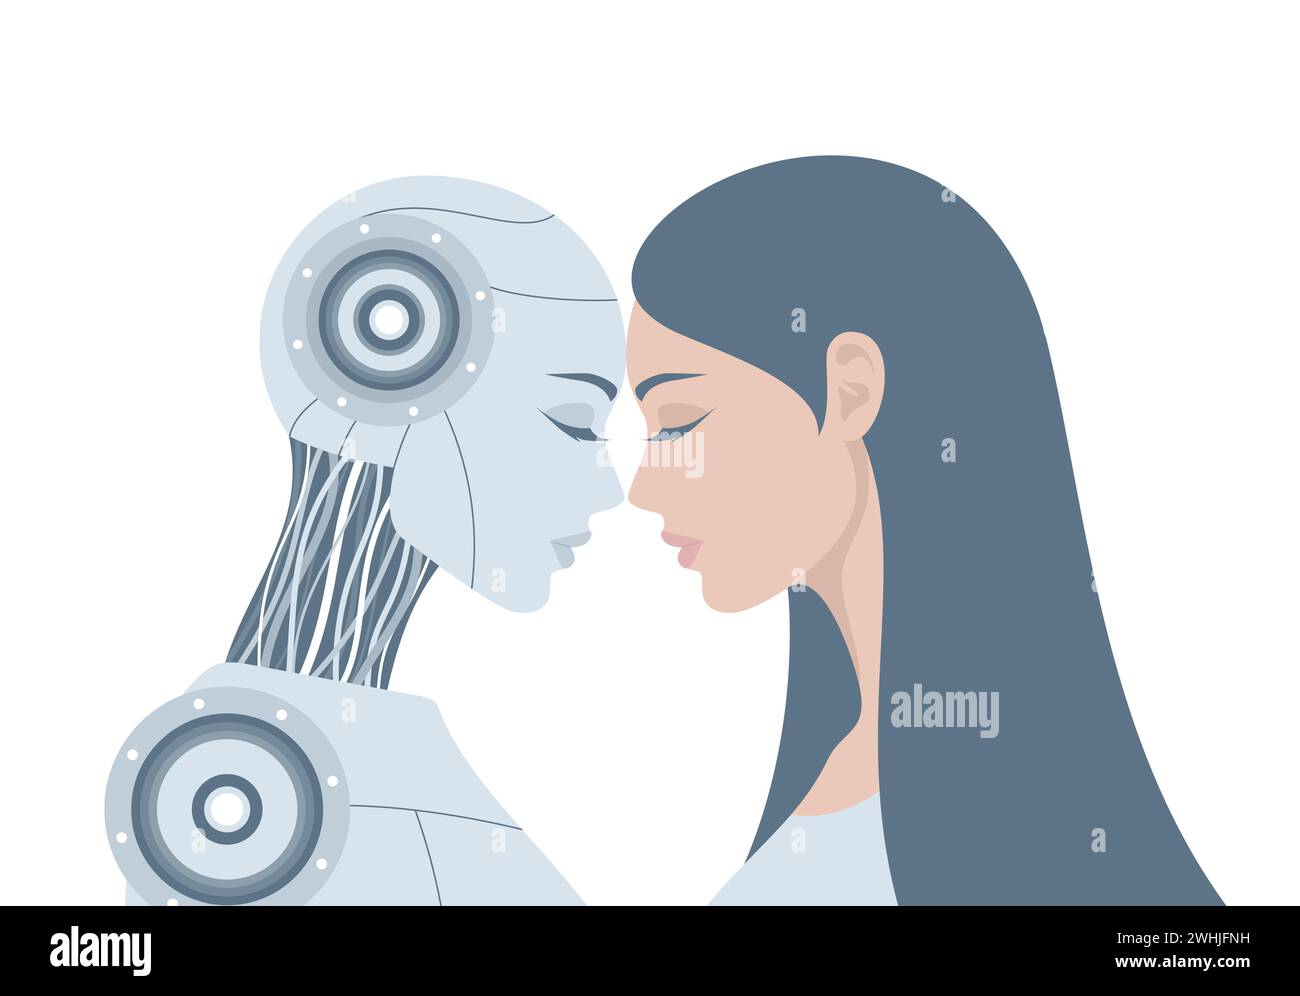 Donna robot umanoide e donna umana in piedi insieme, appoggiate la fronte l'una contro l'altra, isolate su uno sfondo bianco. Illus vettoriale piatto Illustrazione Vettoriale